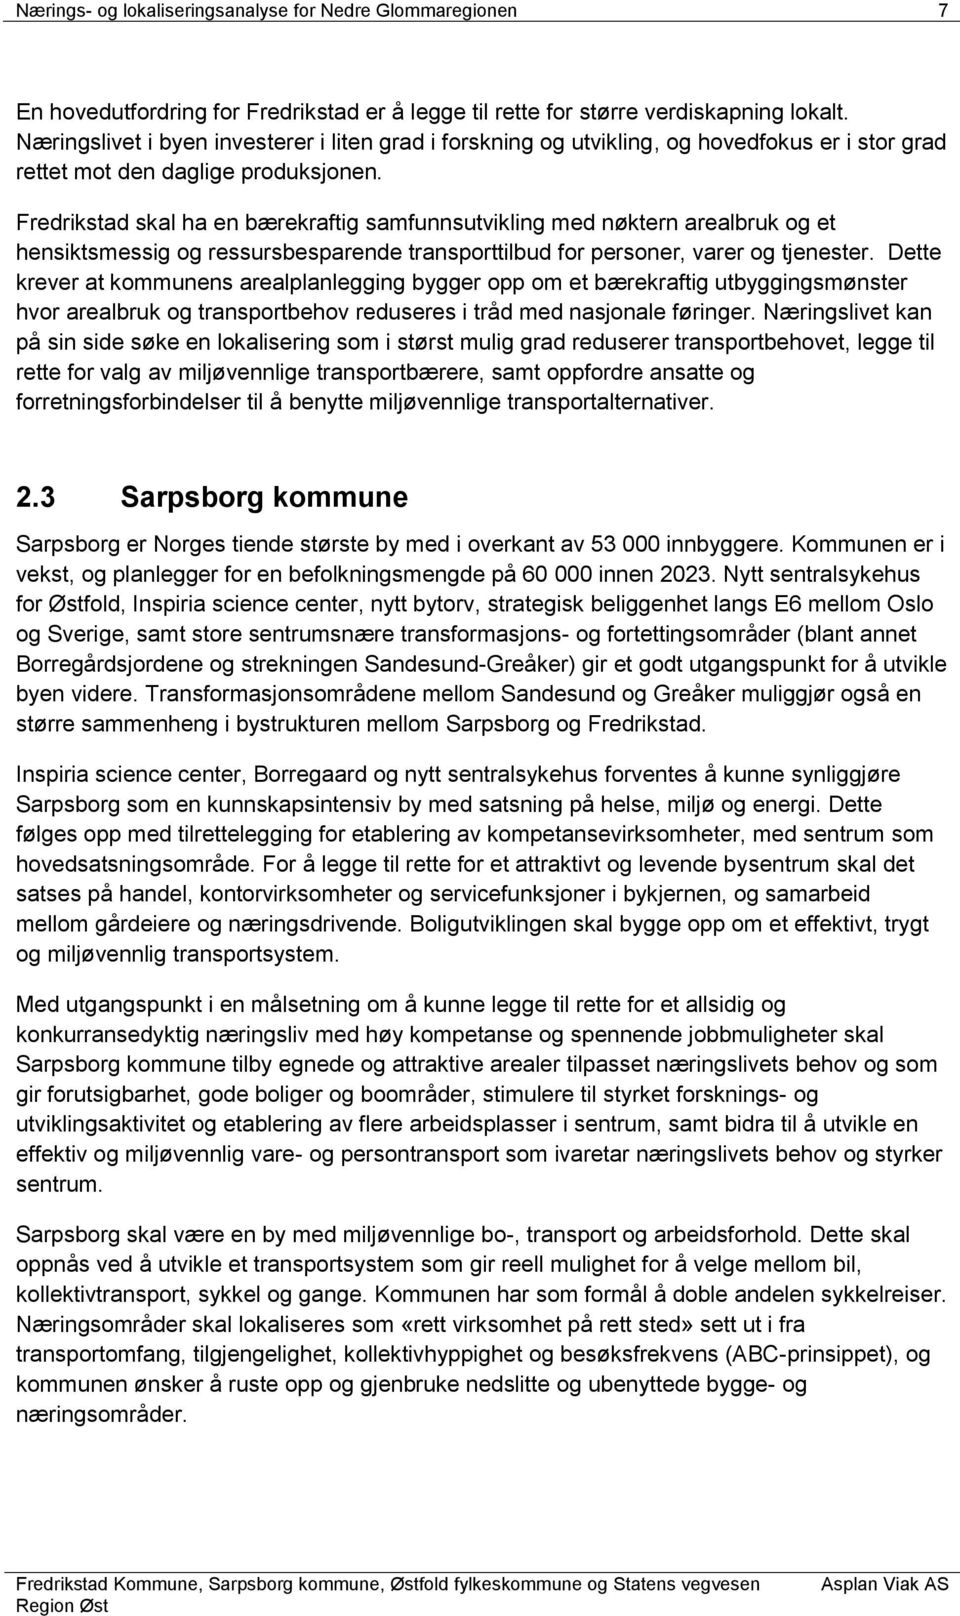 Fredrikstad skal ha en bærekraftig samfunnsutvikling med nøktern arealbruk og et hensiktsmessig og ressursbesparende transporttilbud for personer, varer og tjenester.